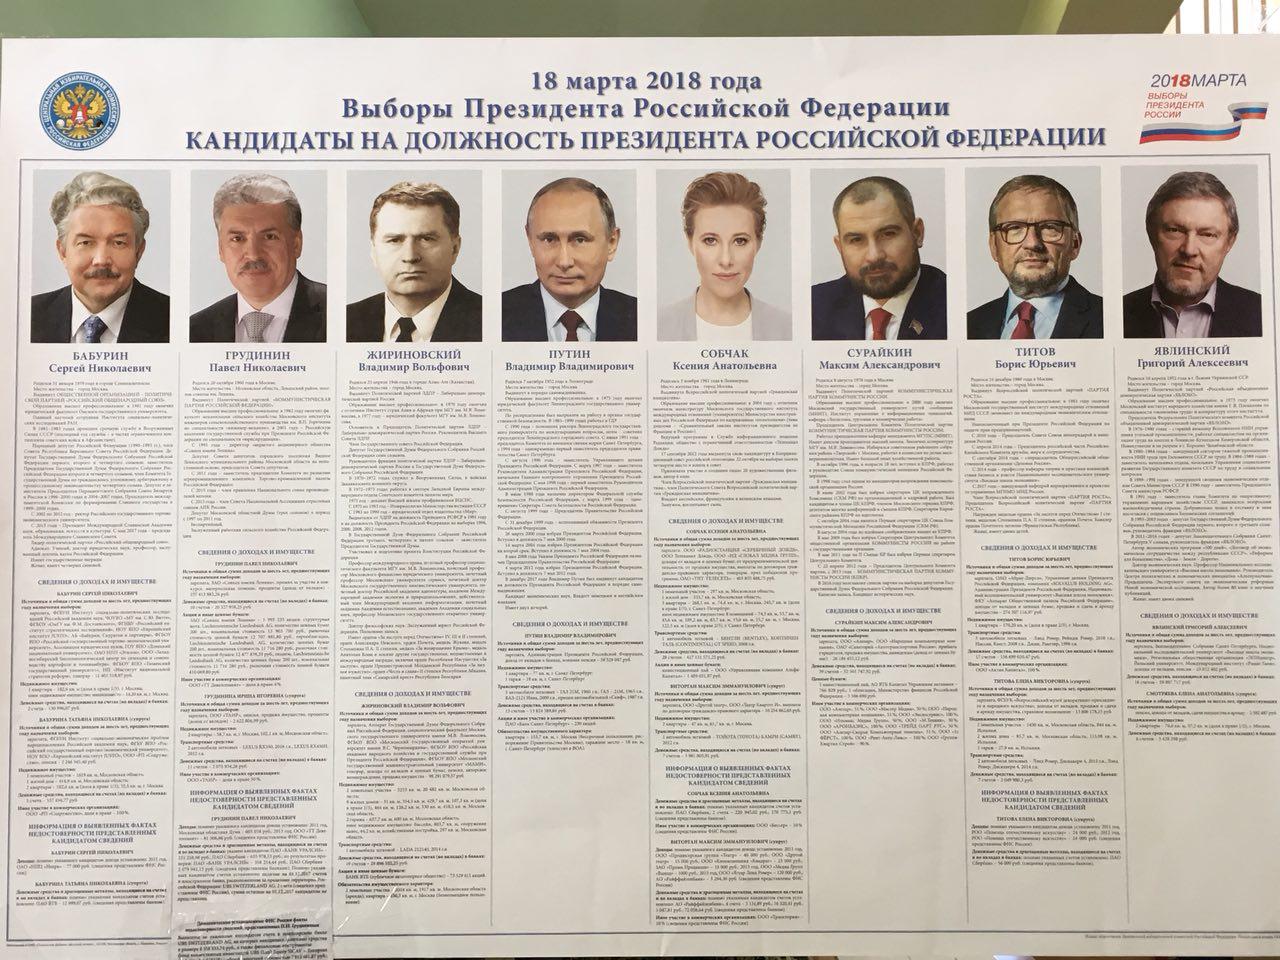 Начало выборов президента россии 2024 время. Президентские выборы в России 2012 кандидаты.